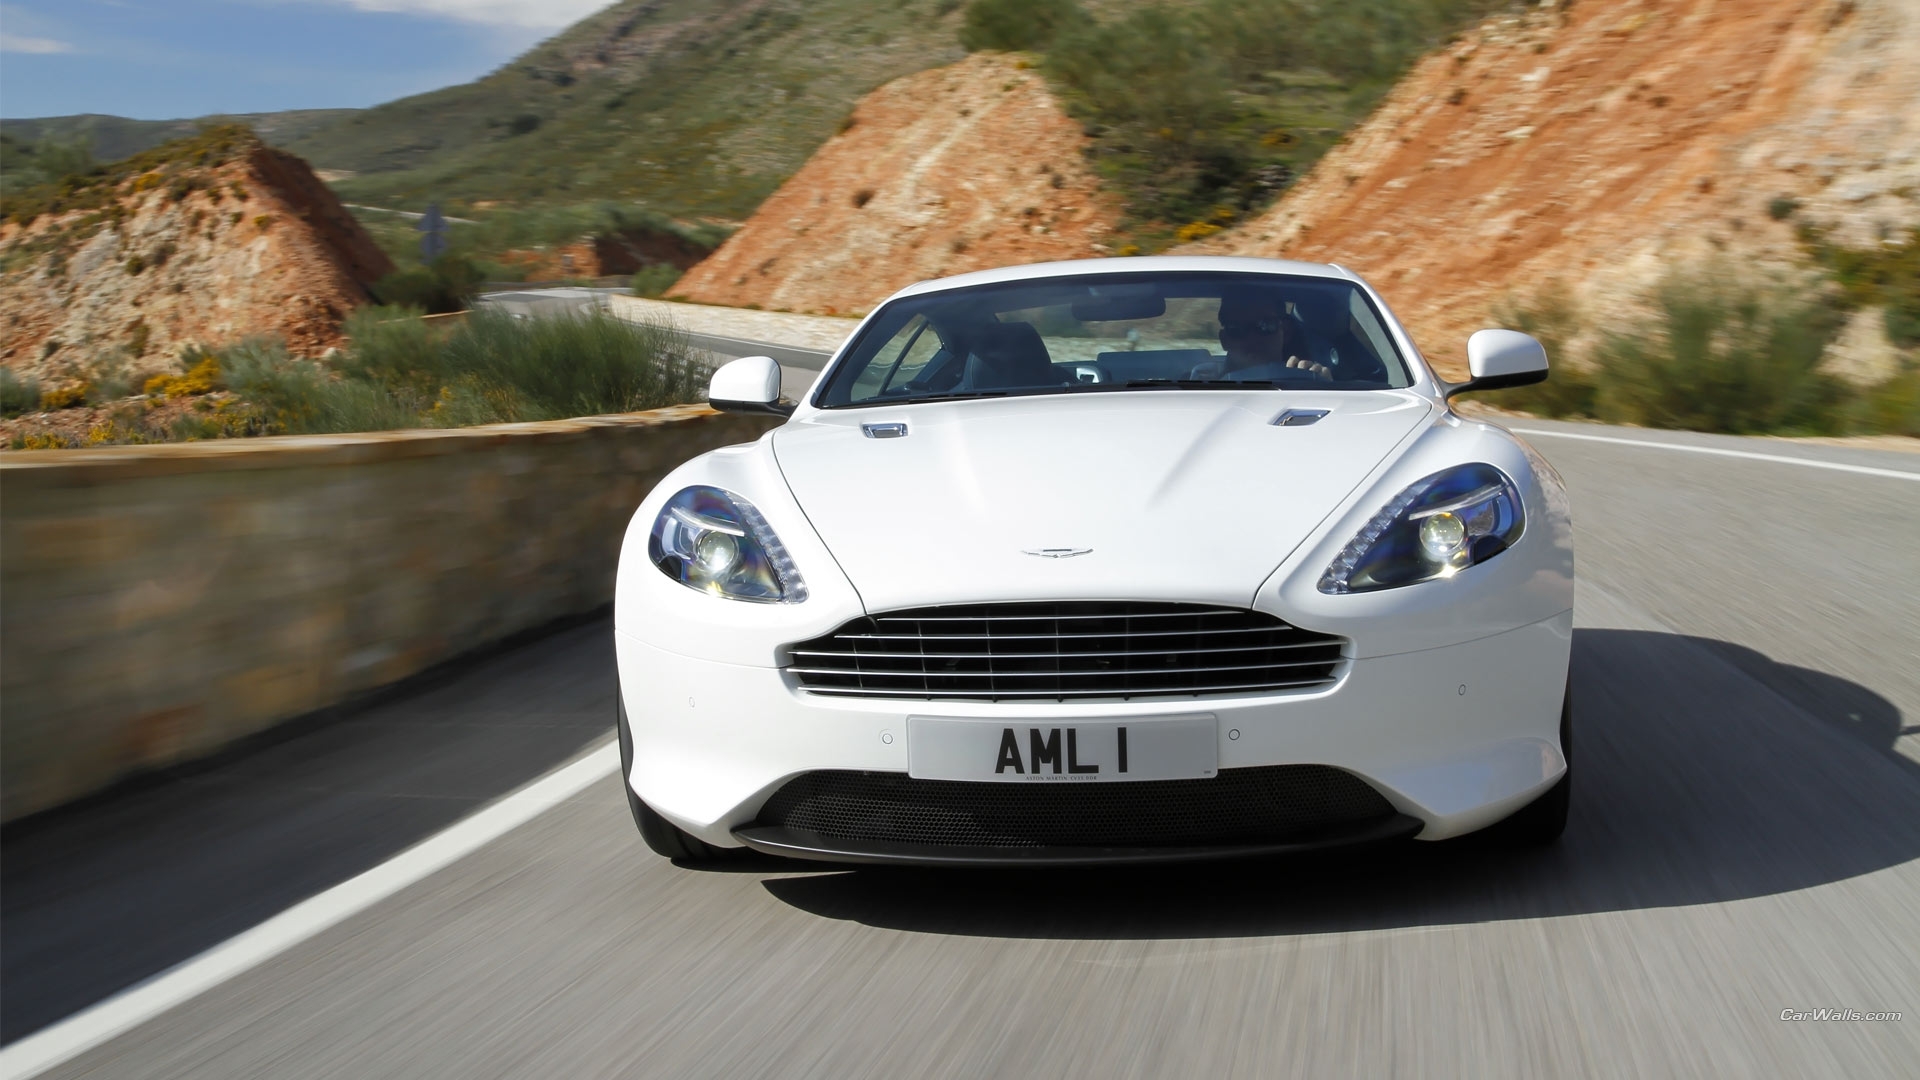 Скачать картинку Астон Мартин (Aston Martin), Транспорт, Машины, Дороги в телефон бесплатно.